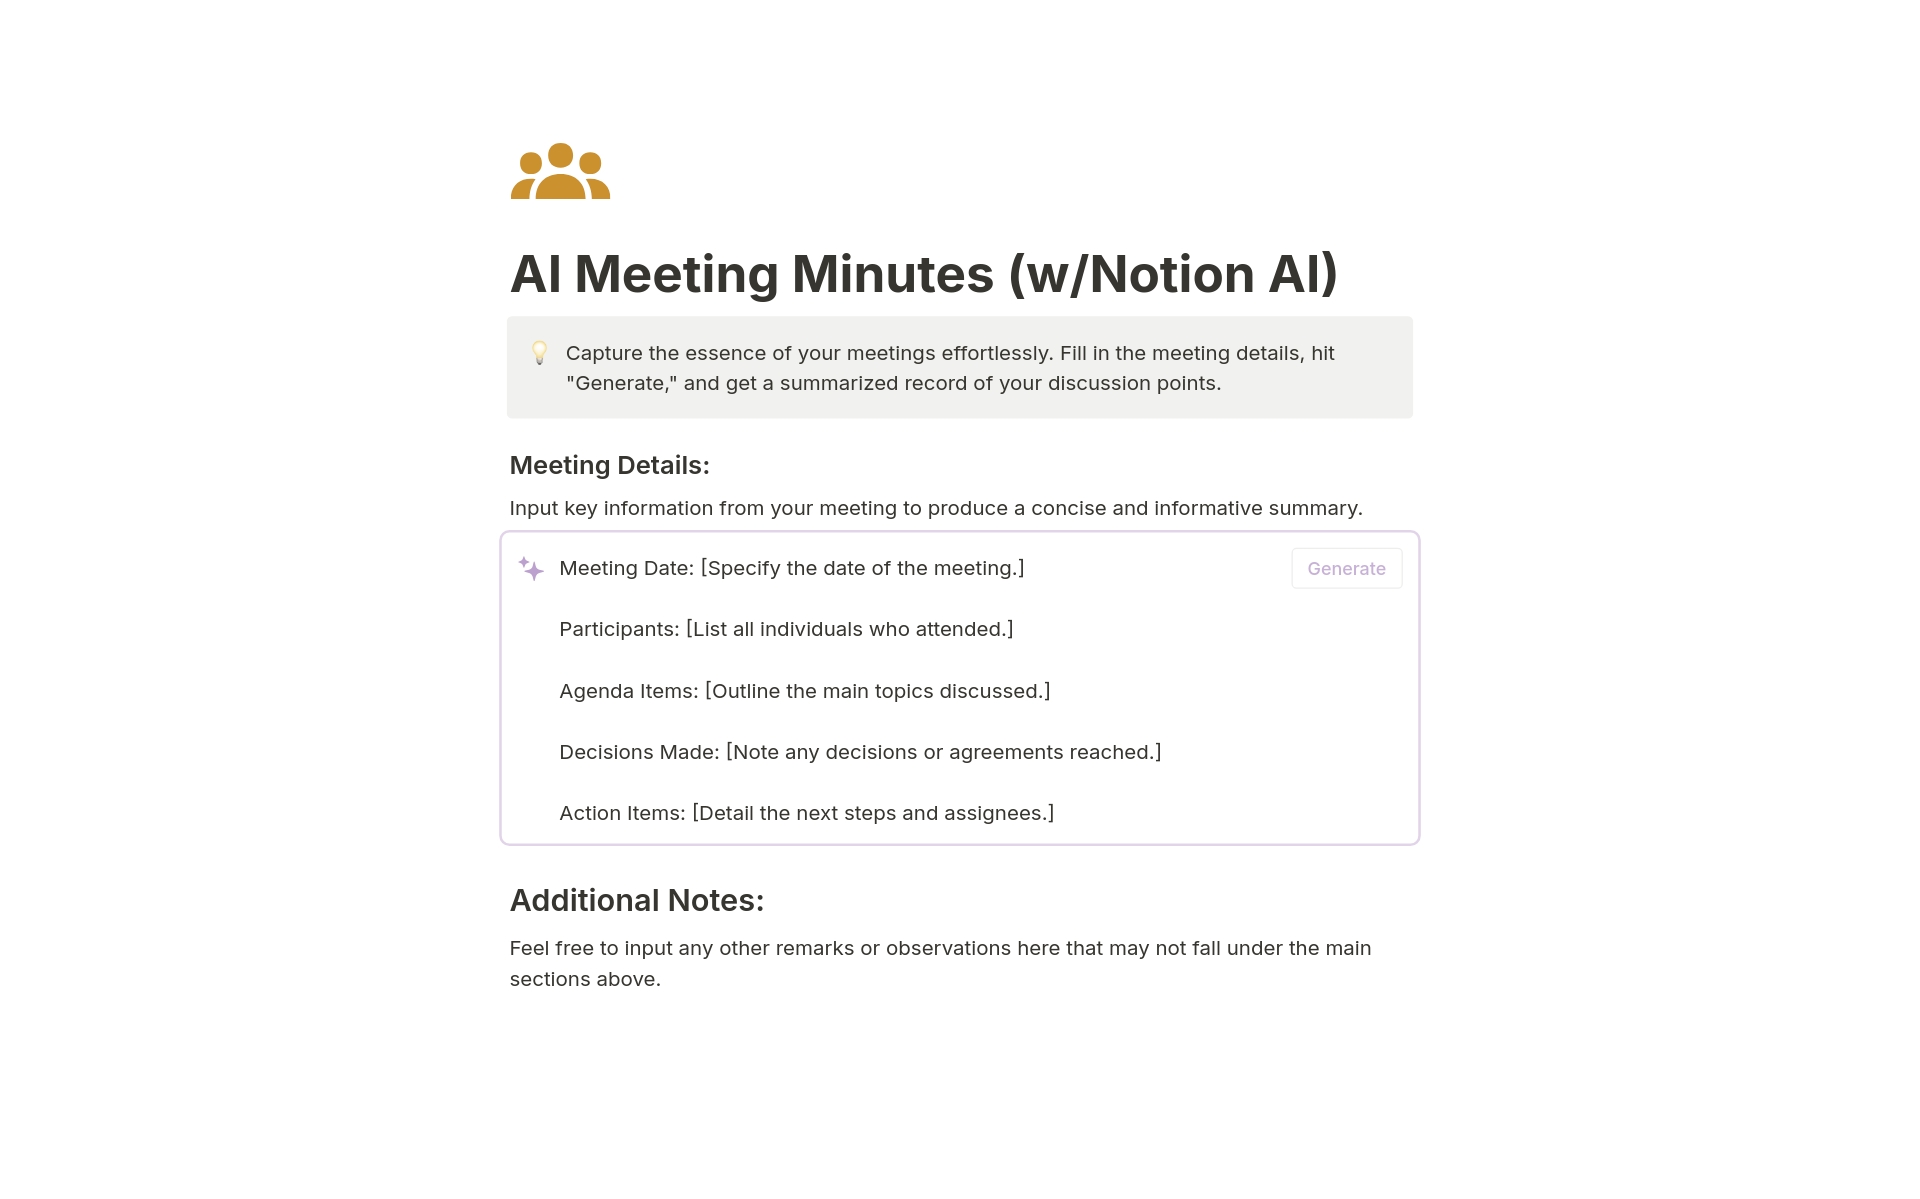 Uma prévia do modelo para AI Meeting Minutes